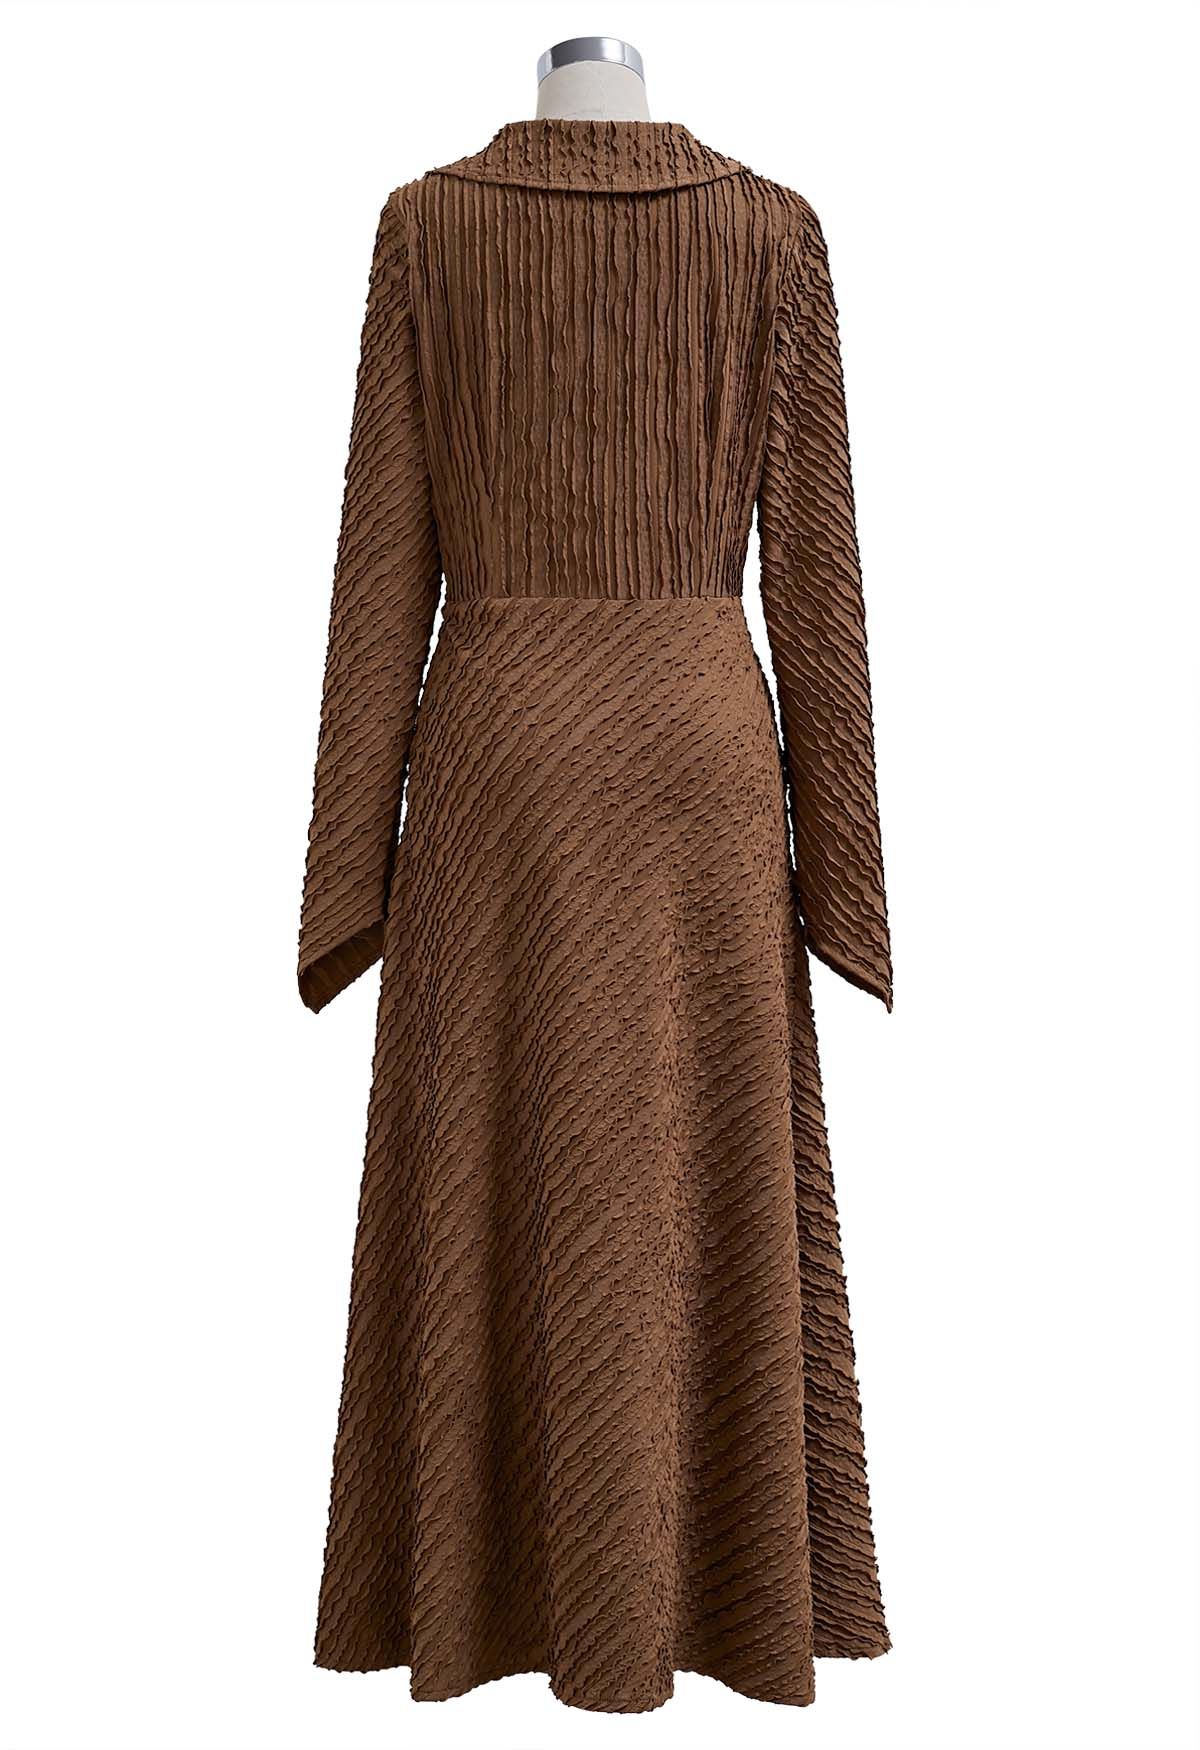 Collared Surplice Neckline Wavy Texture Dress in Caramel